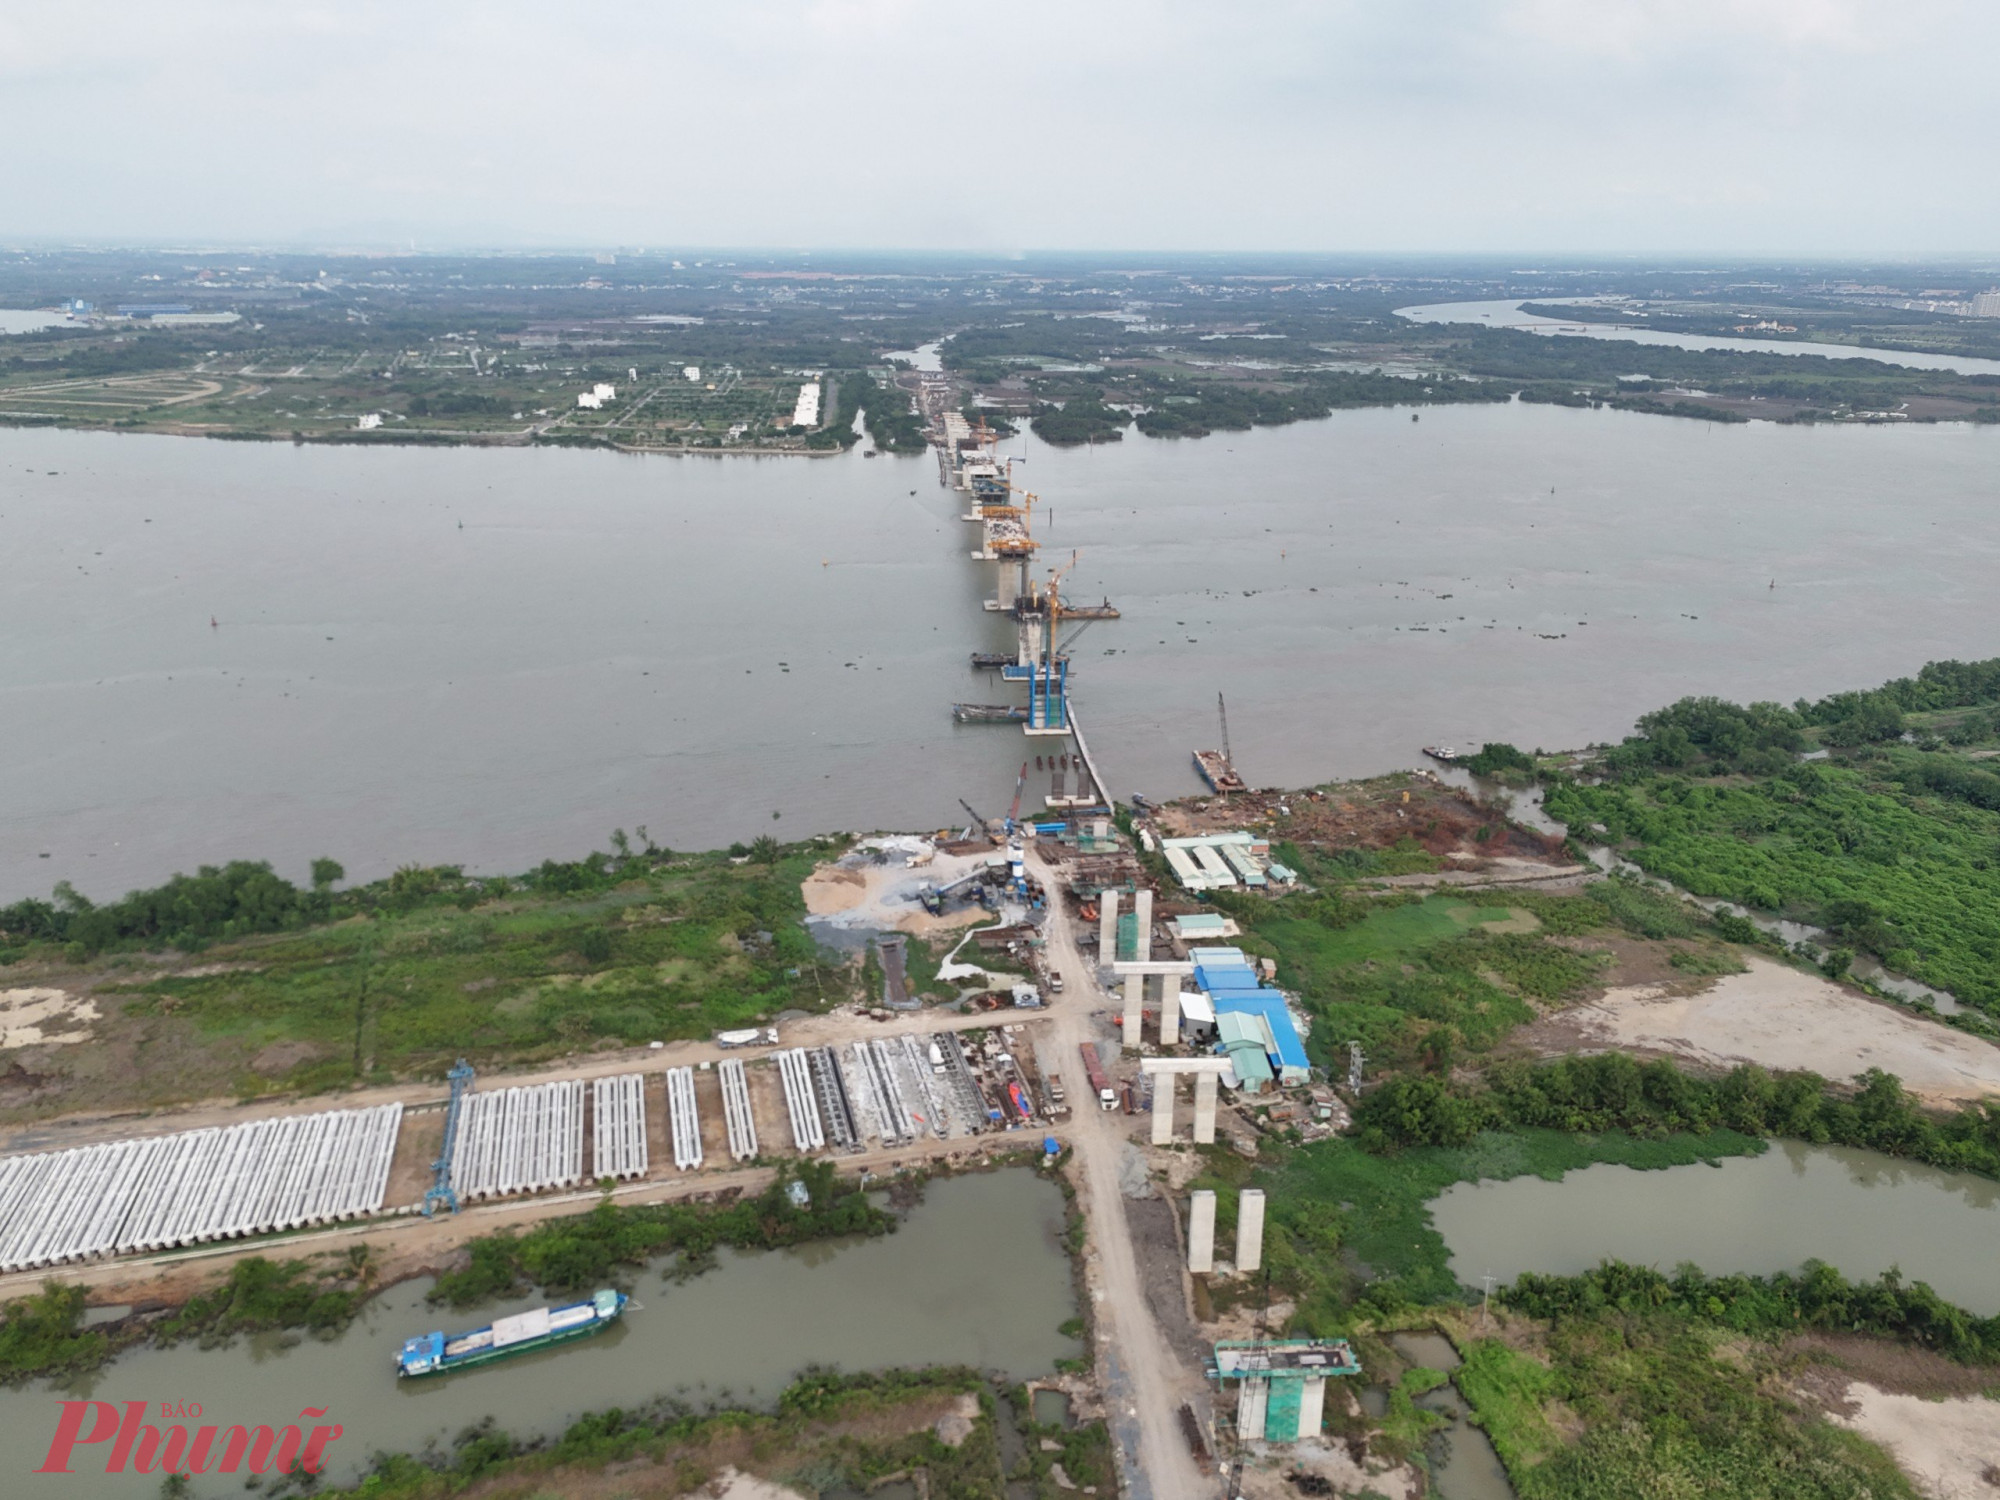 Cầu thuộc dự án thành phần 1A - đoạn Tân Vạn - Nhơn Trạch (Vành đai 3 TPHCM), có tổng chiều dài 8,22km, gồm 6,3km qua tỉnh Đồng Nai và 1,92km qua TPHCM, tổng mức đầu tư dự án là 6.900 tỉ đồng.